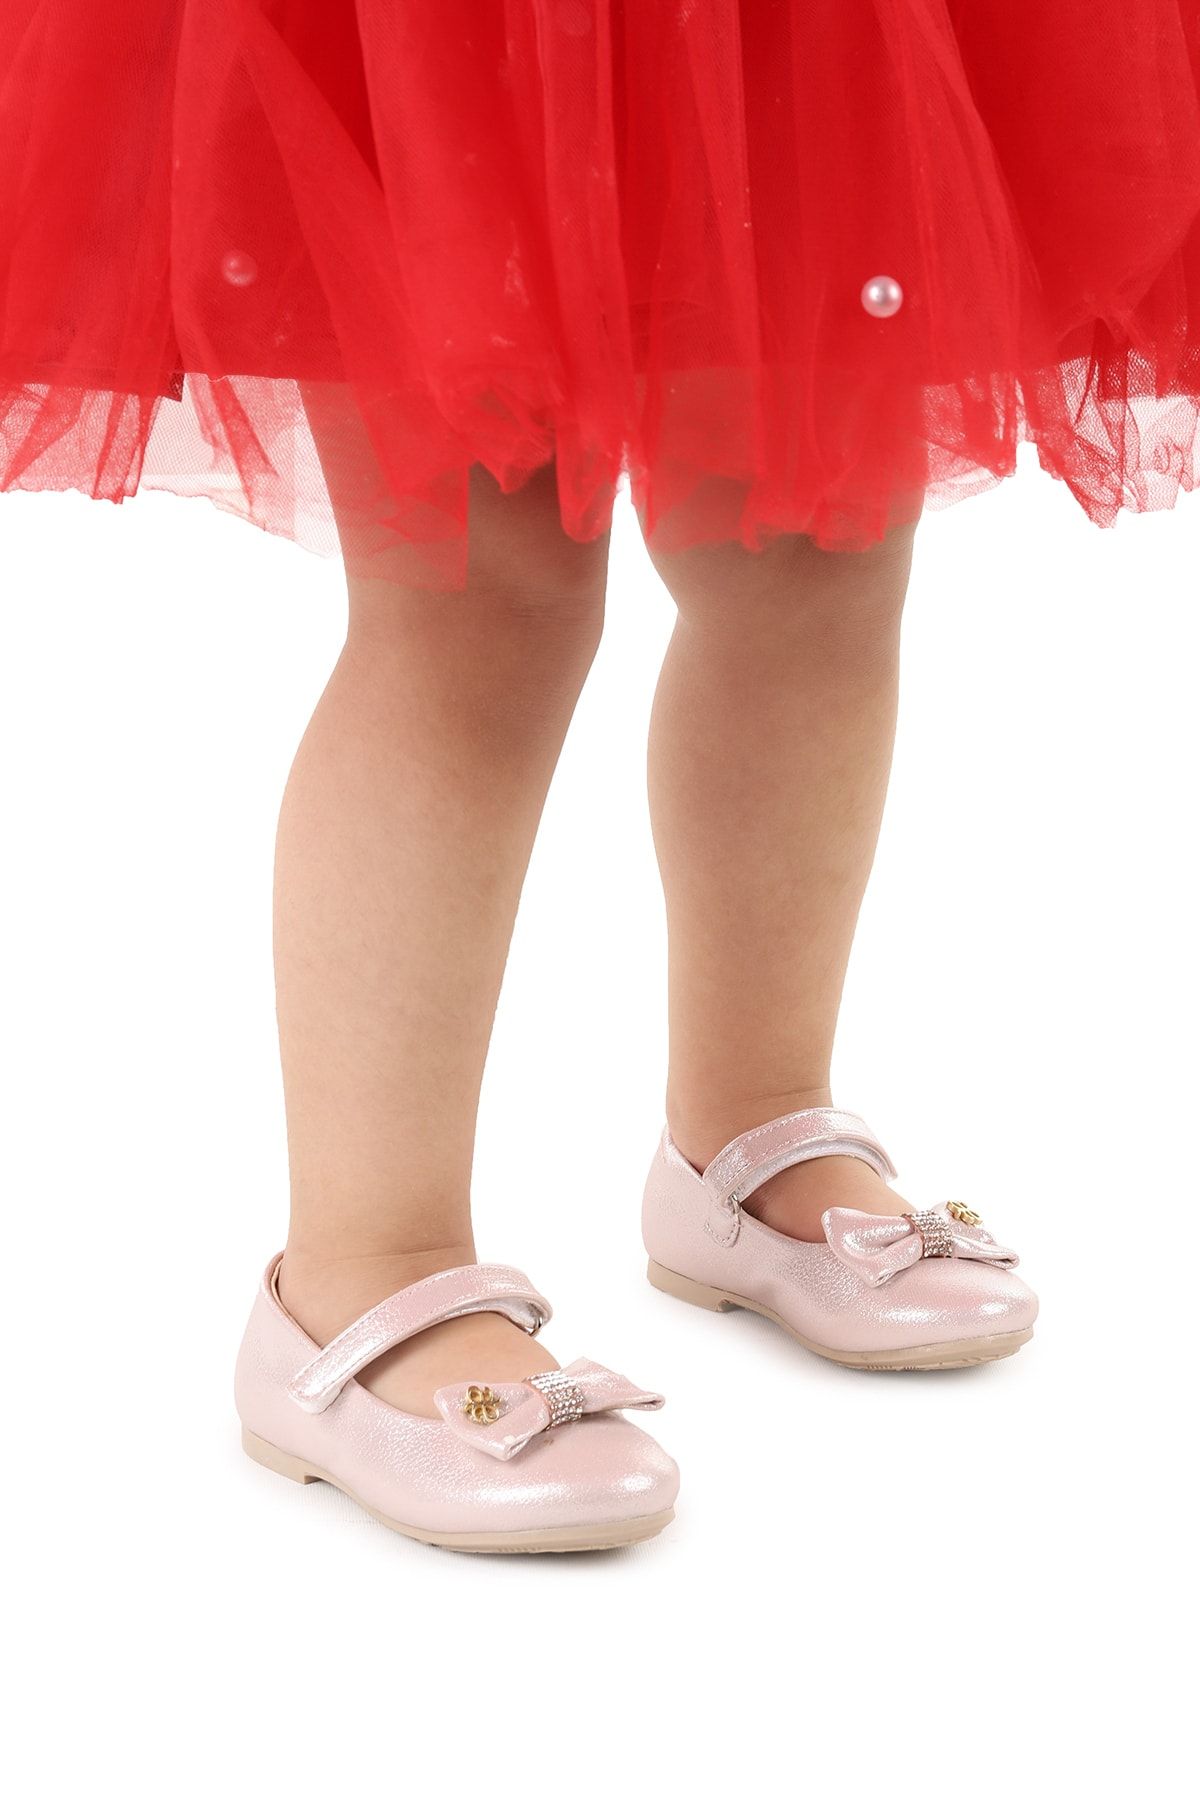 Kiko Kids Cırtlı Fiyonklu Kız Çocuk Babet Ayakkabı Ege 201 Vakko